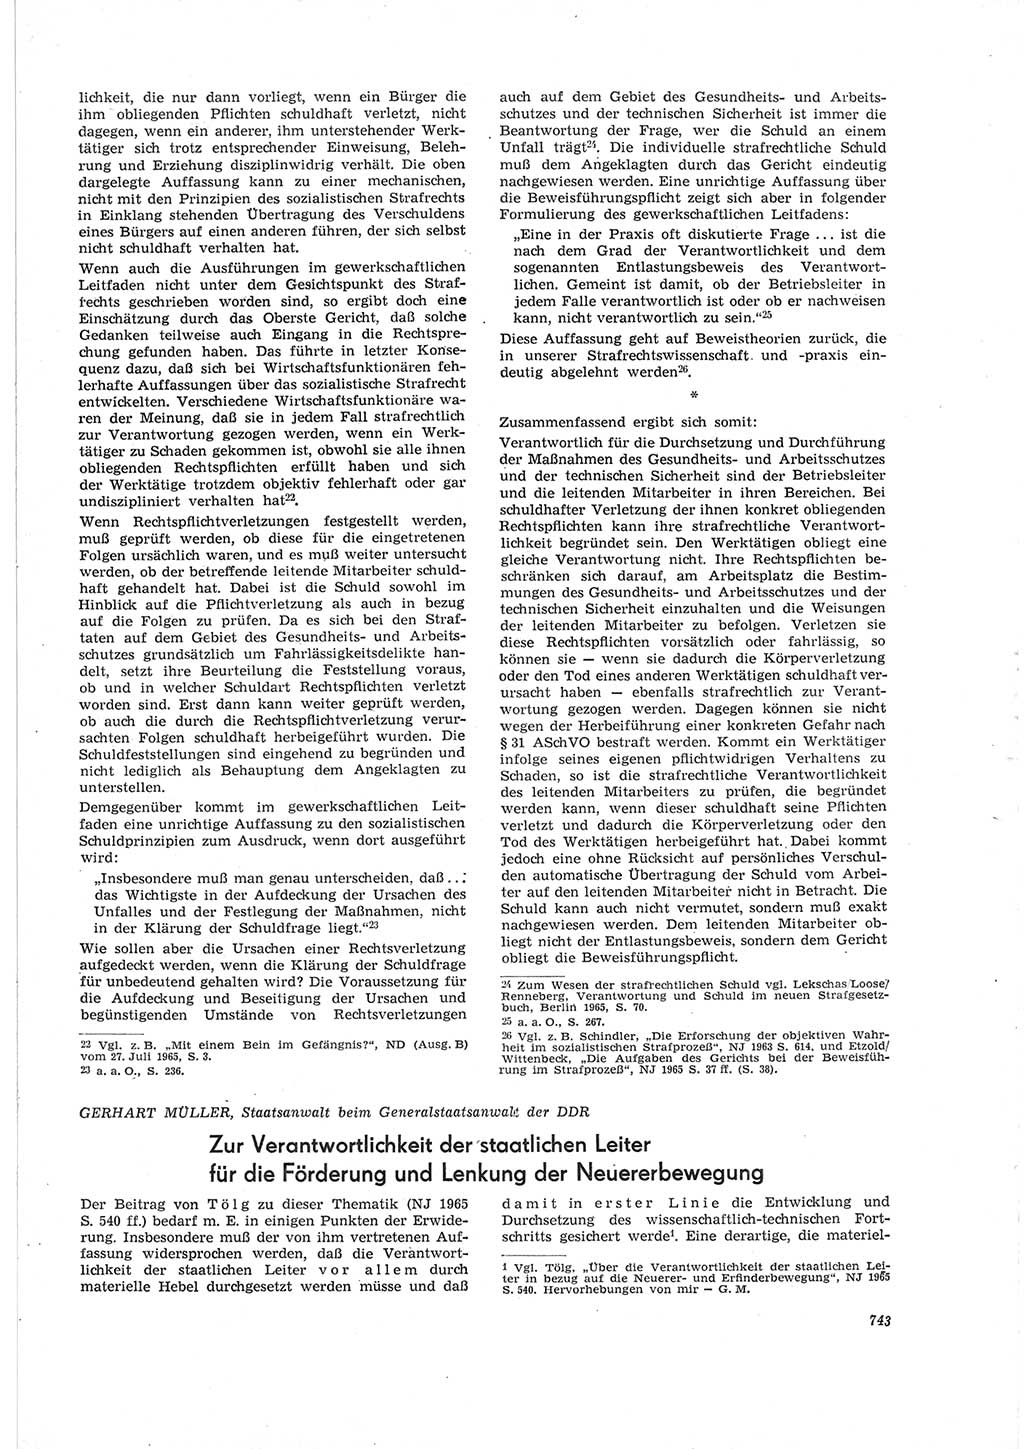 Neue Justiz (NJ), Zeitschrift für Recht und Rechtswissenschaft [Deutsche Demokratische Republik (DDR)], 19. Jahrgang 1965, Seite 743 (NJ DDR 1965, S. 743)